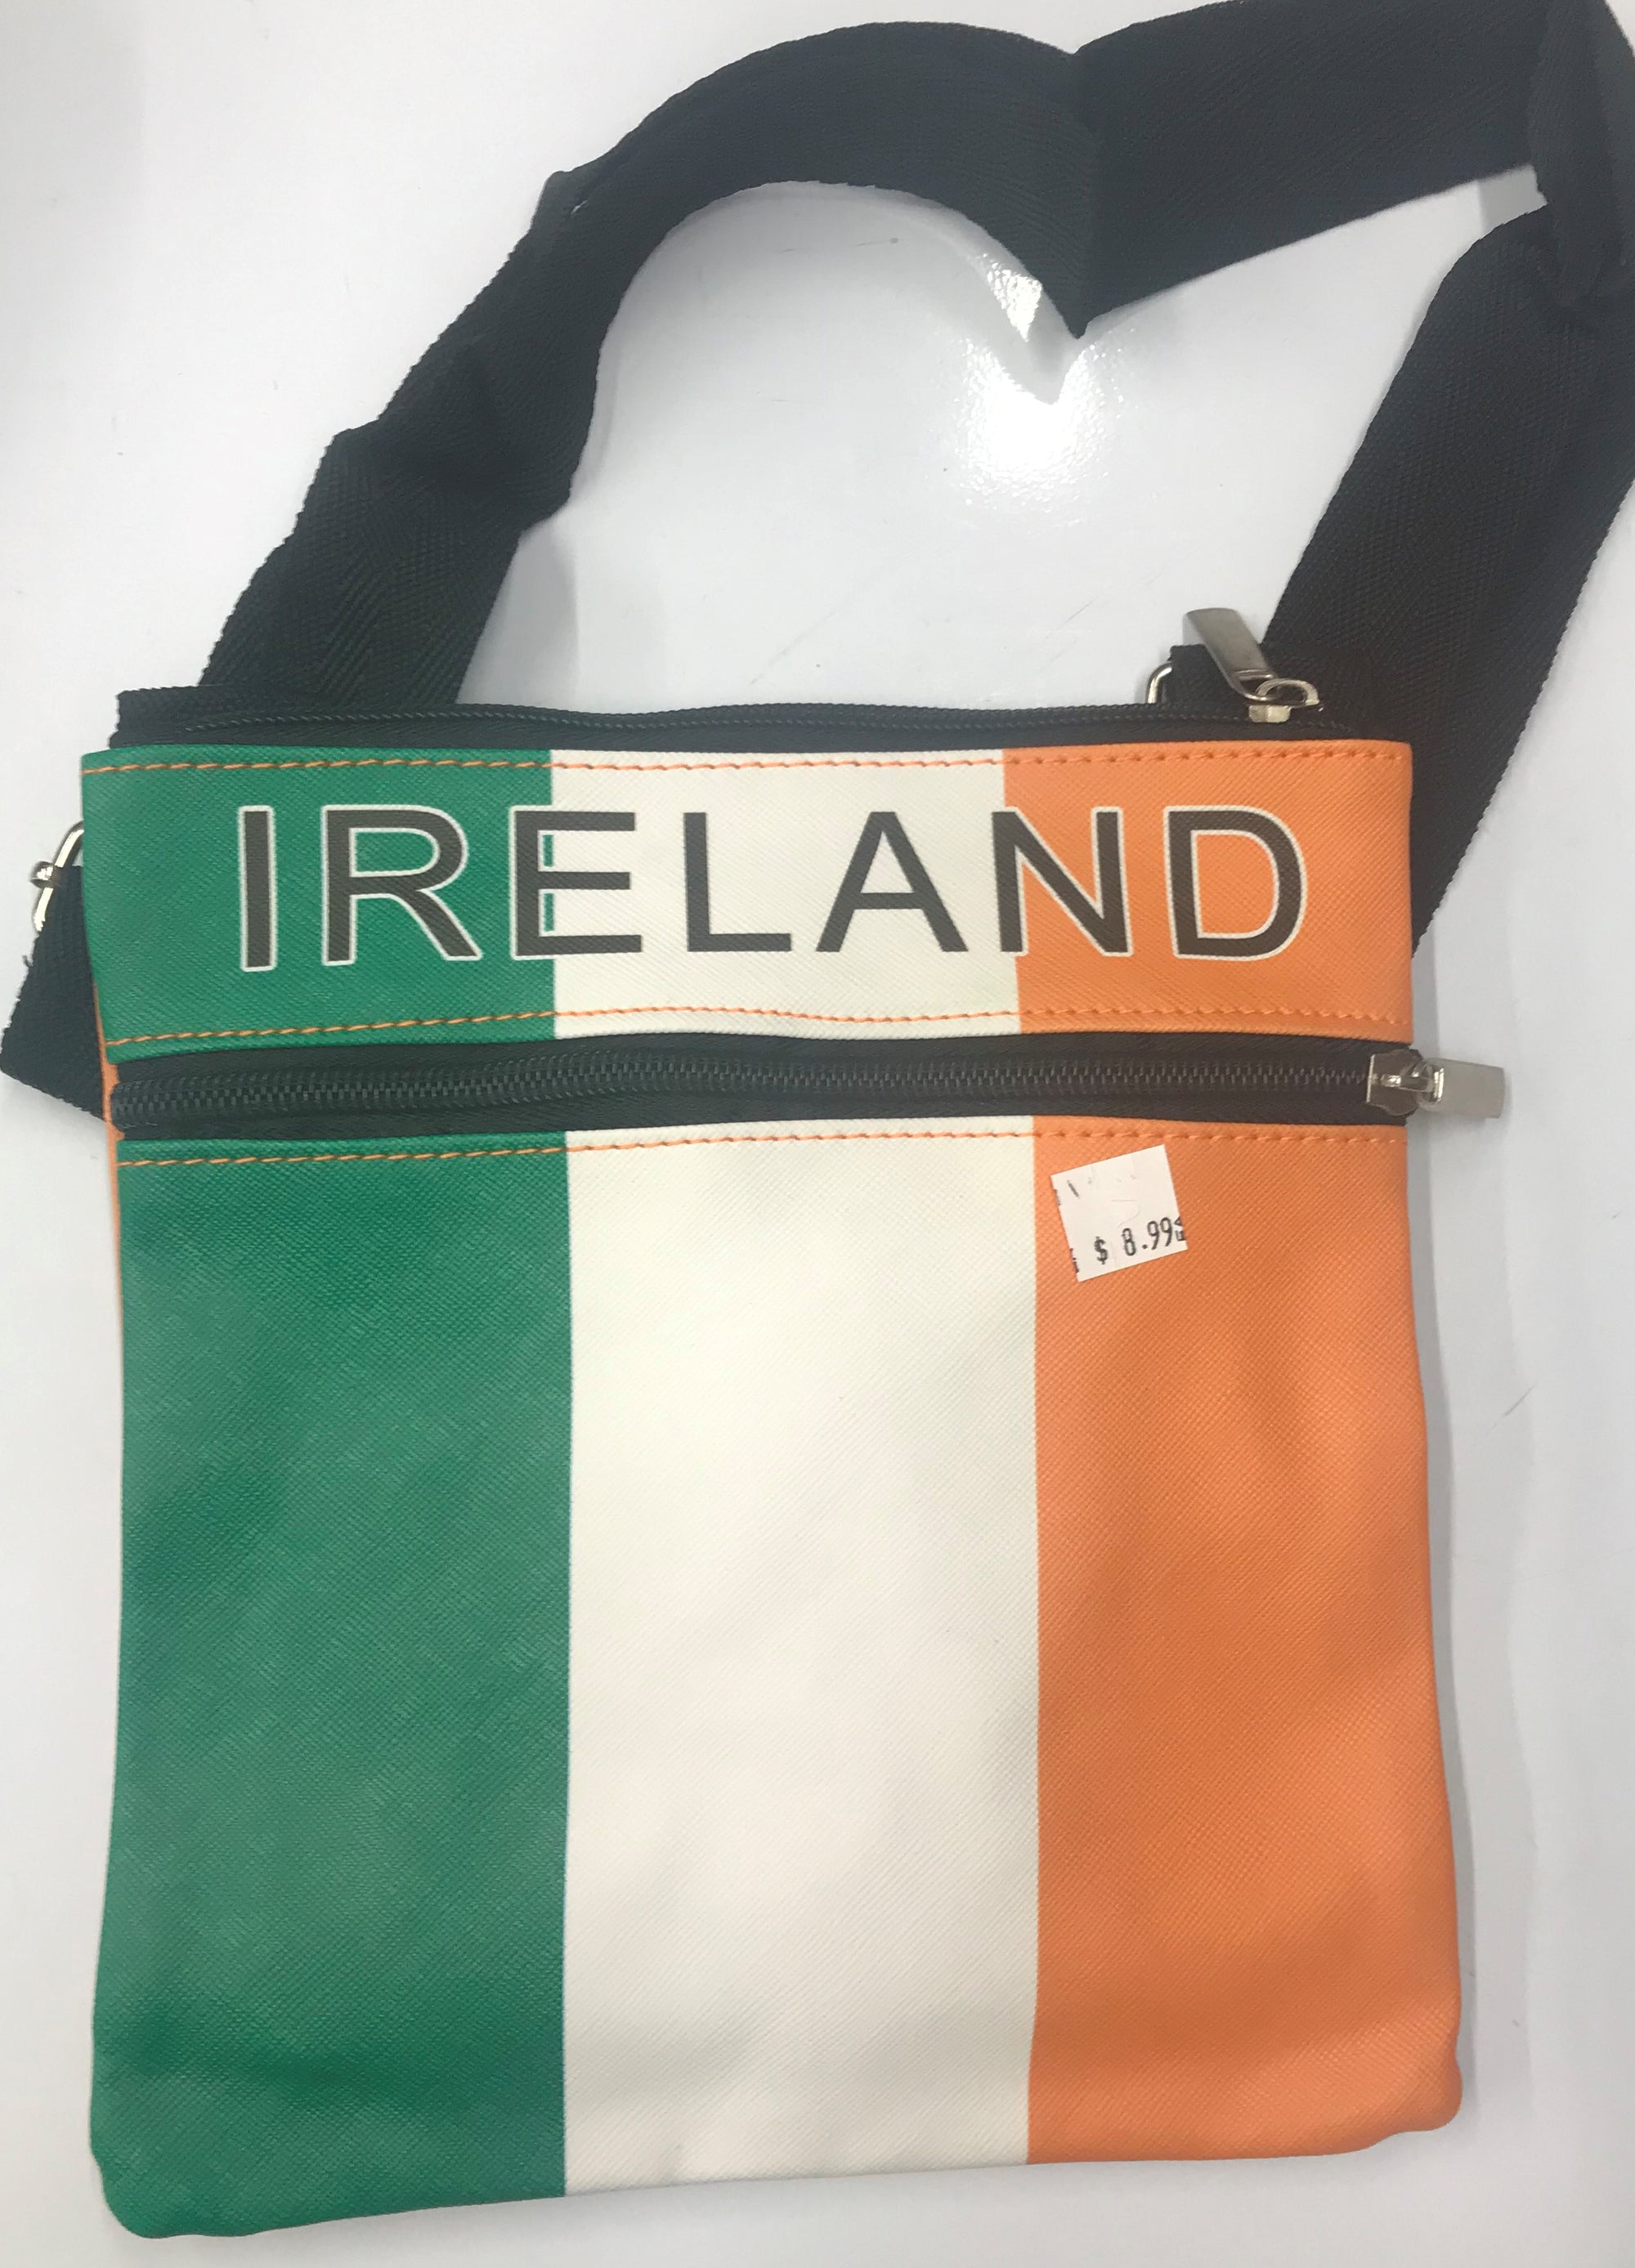 Ireland Messenger Bag